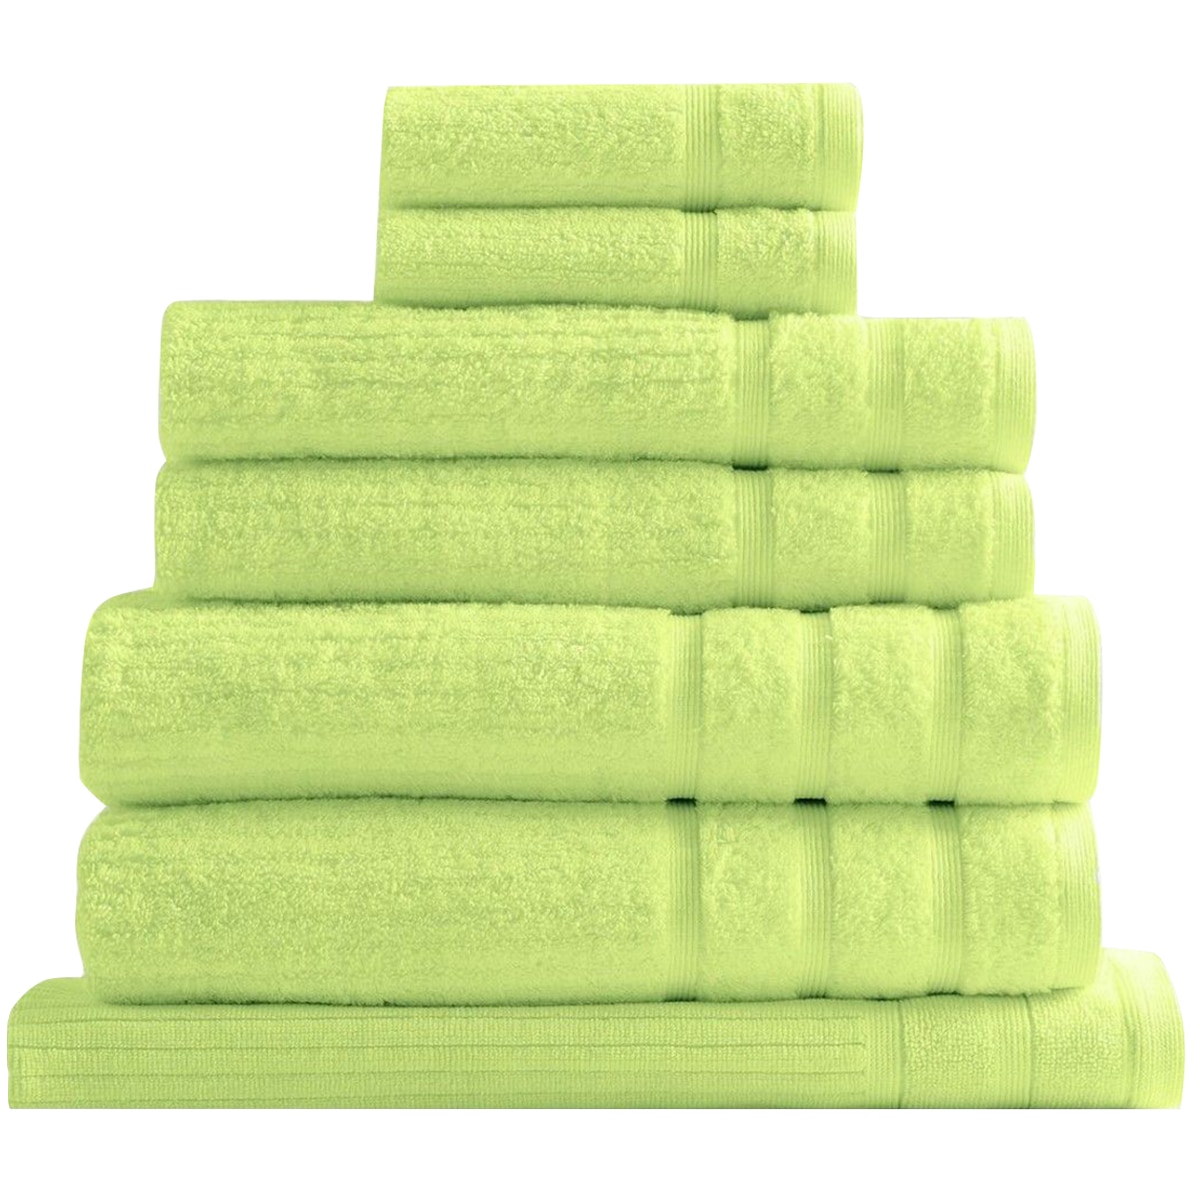 Bdirect Royal Comfort Eden 600GSM 100% Cotton 8 Piece Towel Pack - Spearmint